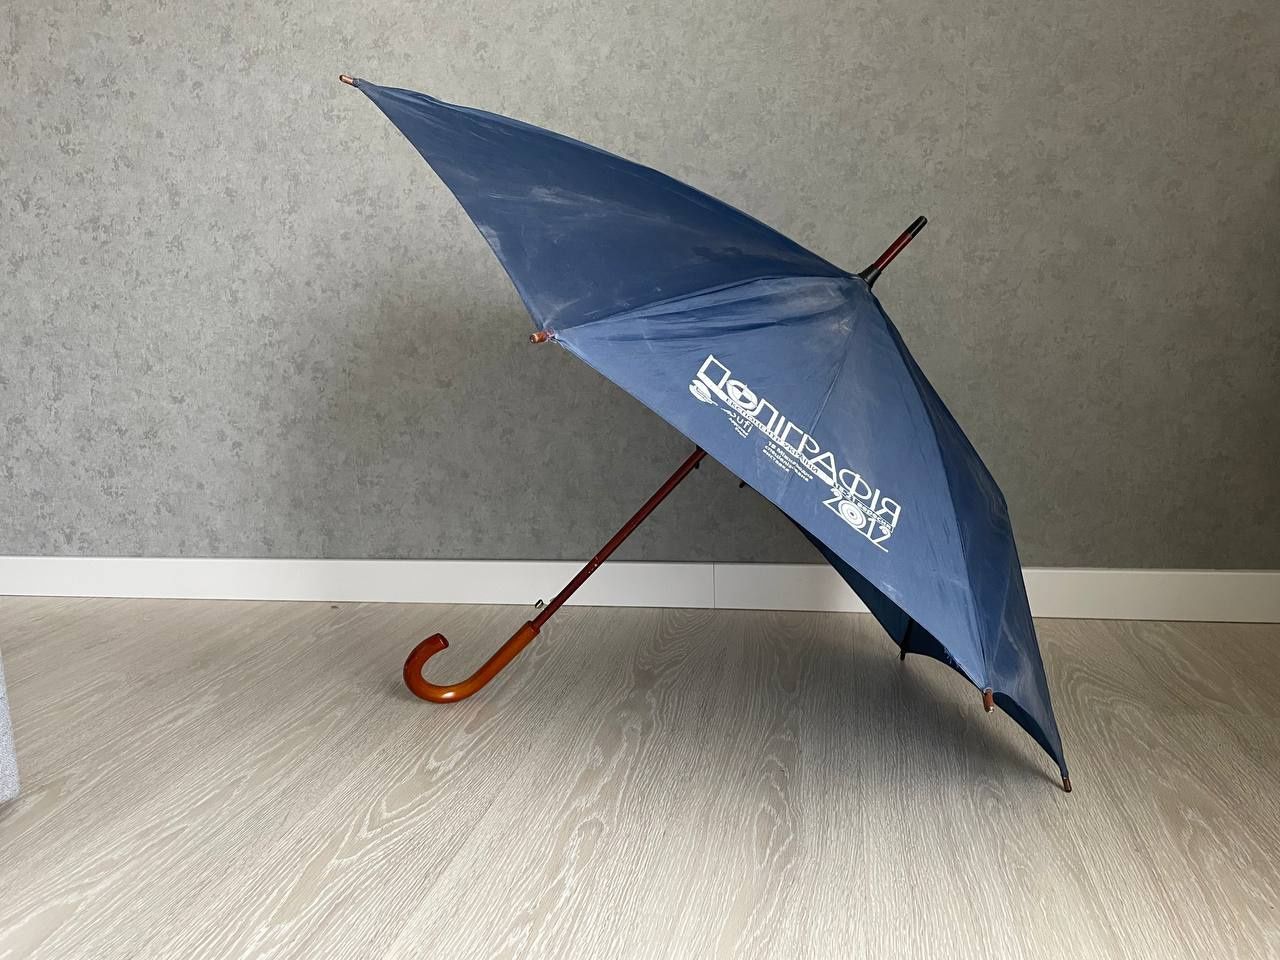 Зонт трость зонтик парасоля від дощу большой парасолька велика